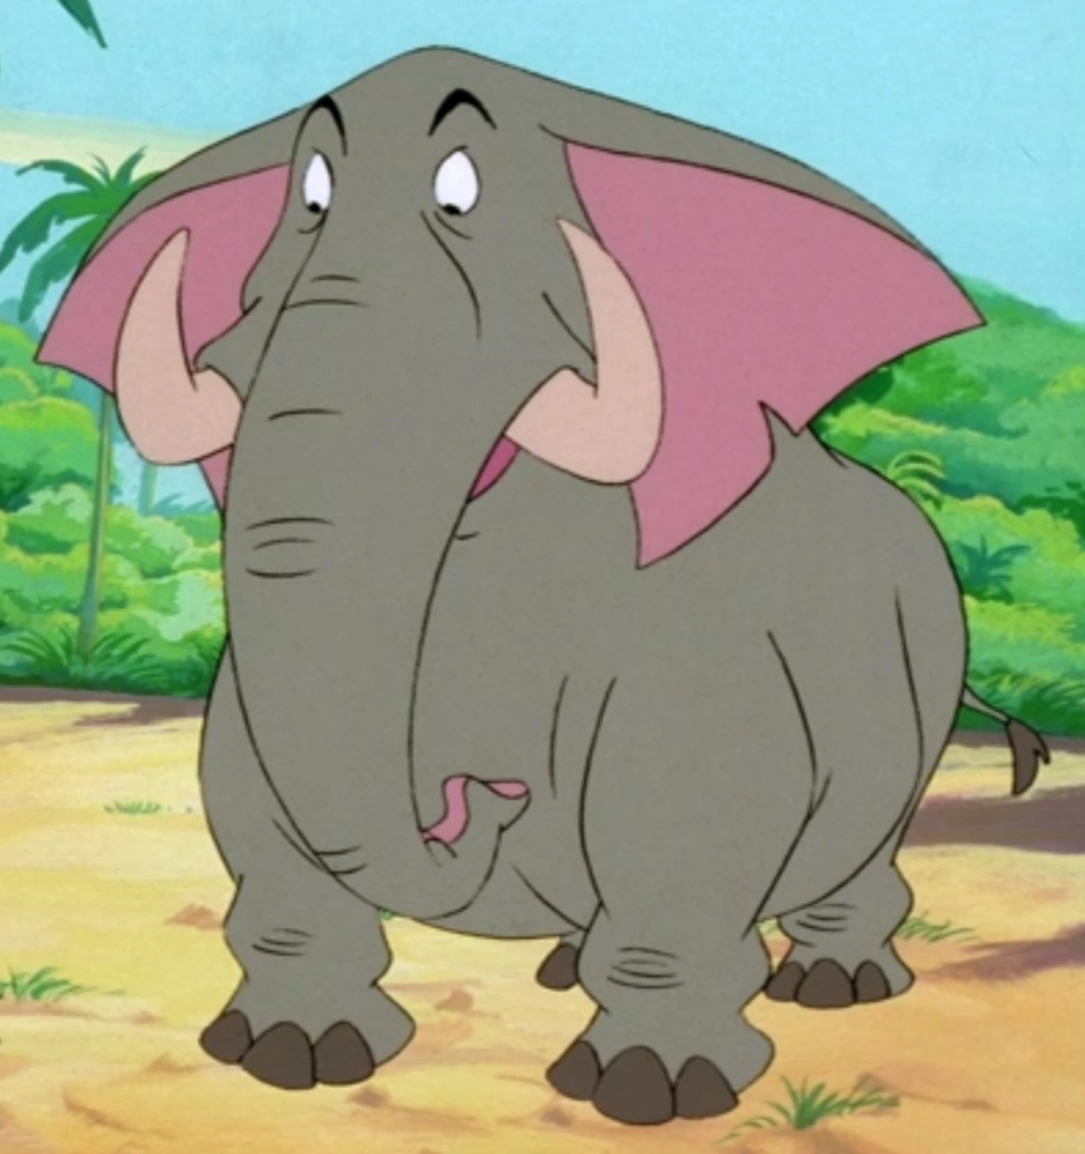 Ned the Elephant | Cartoon characters Wiki | Fandom